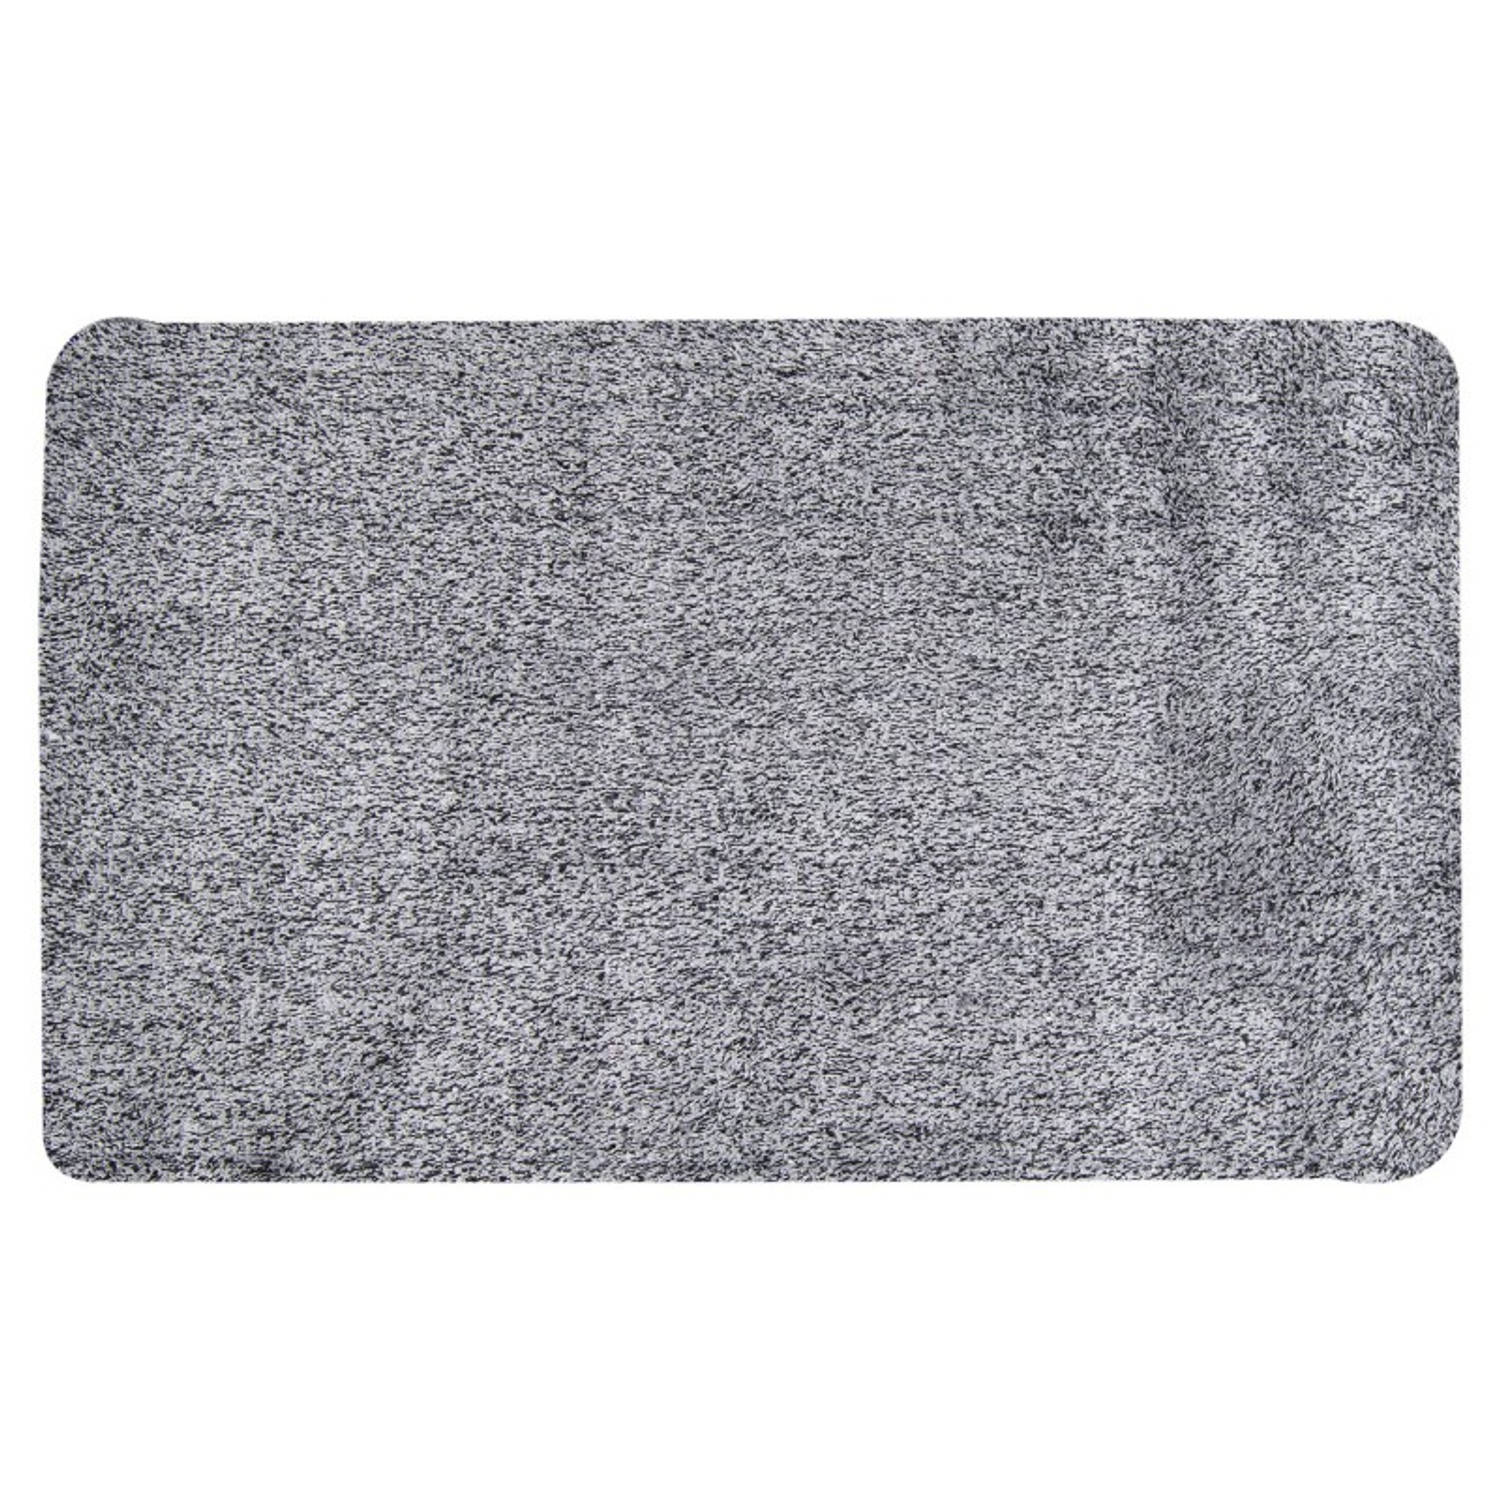 Magic mat extreem absorberende schoonloopmat met antislip - Geschikt voor huisdieren - Magic doormat - 75 x 45 cm grijs